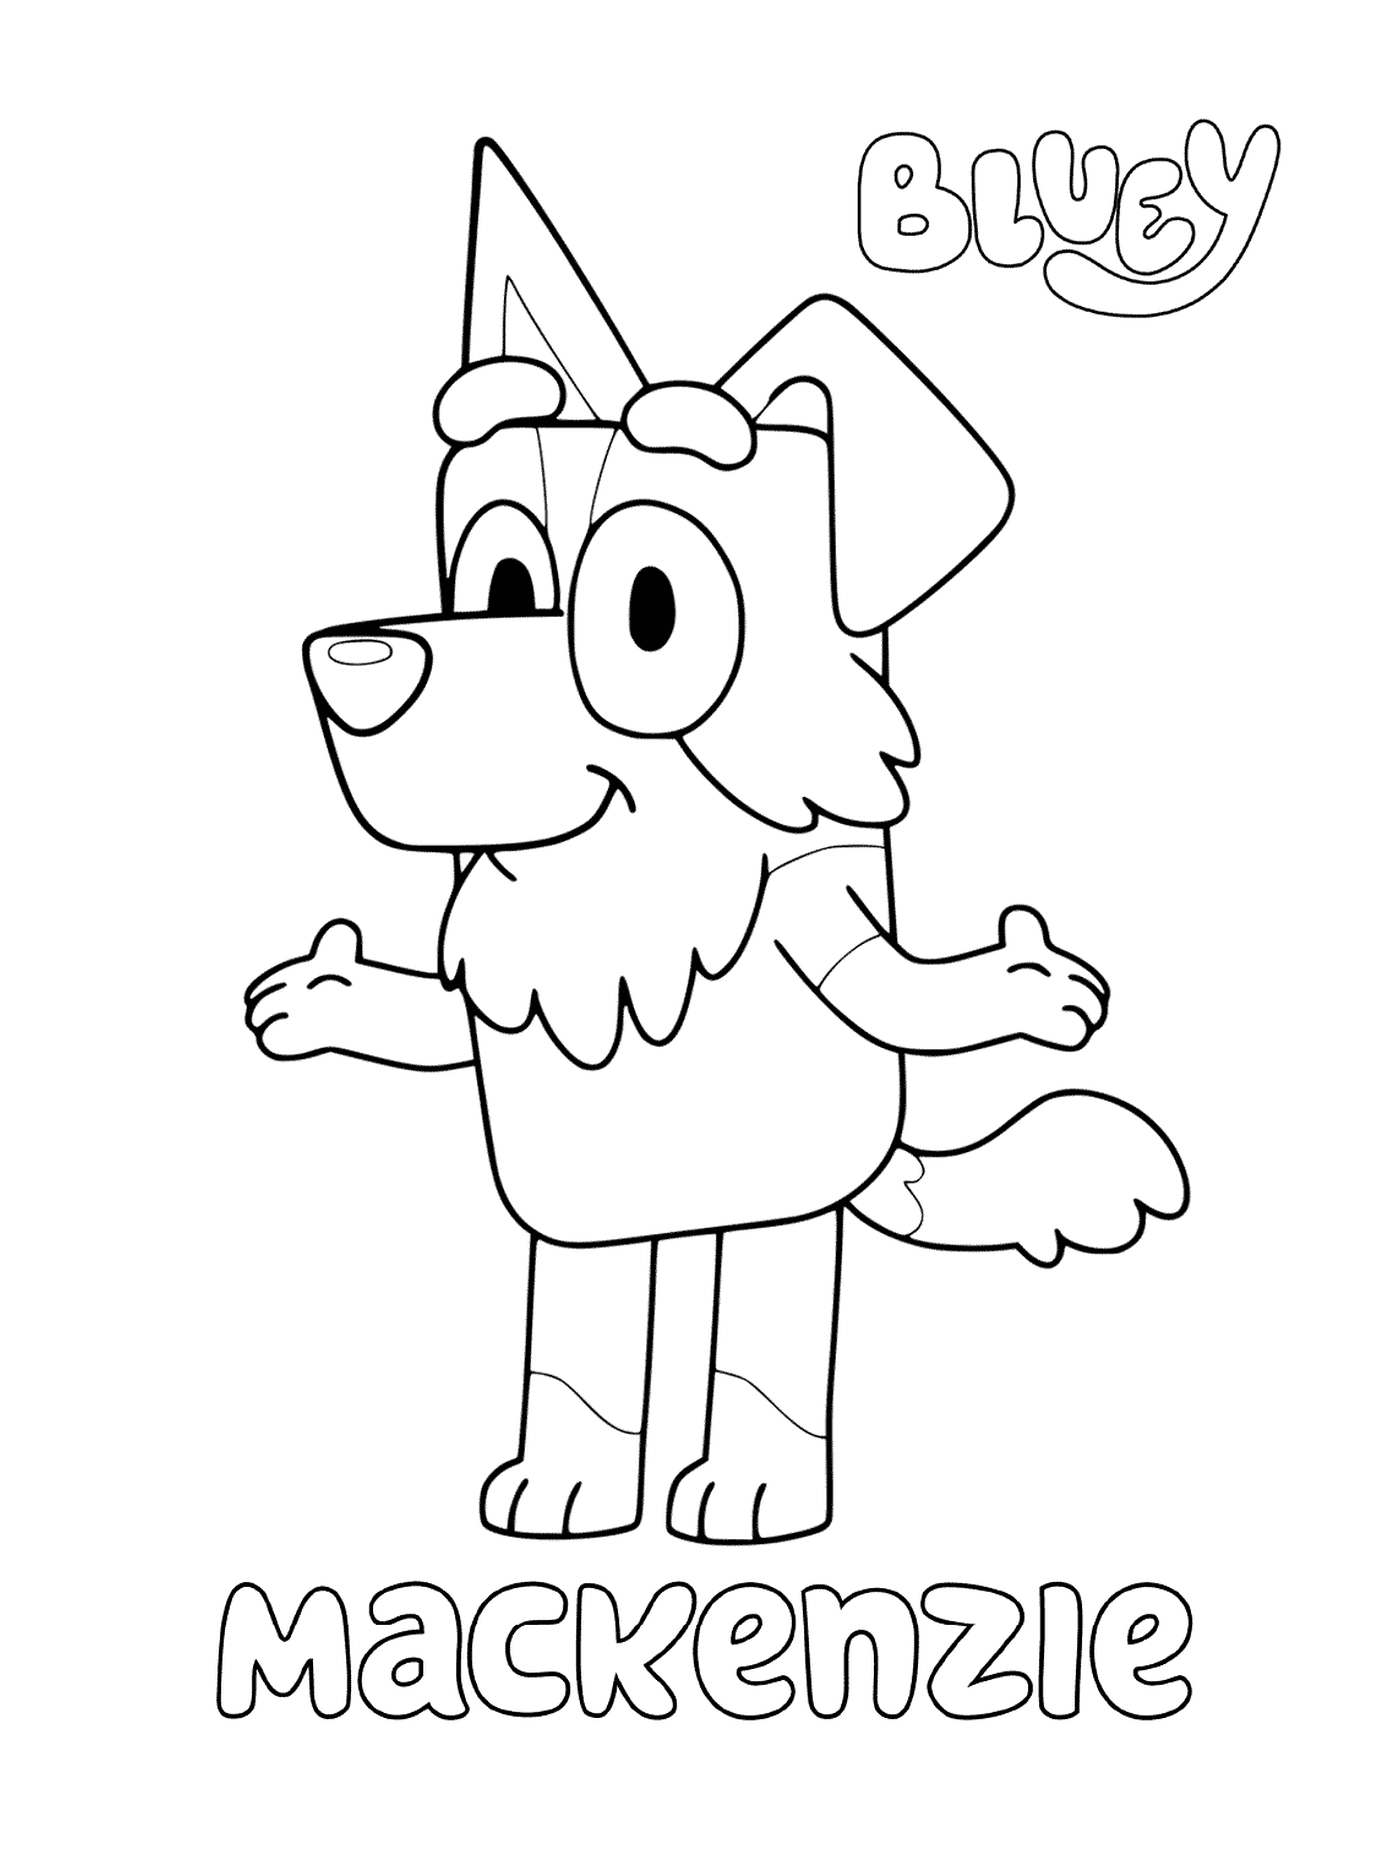  Un perro de dibujos animados llamado Mackenzie 